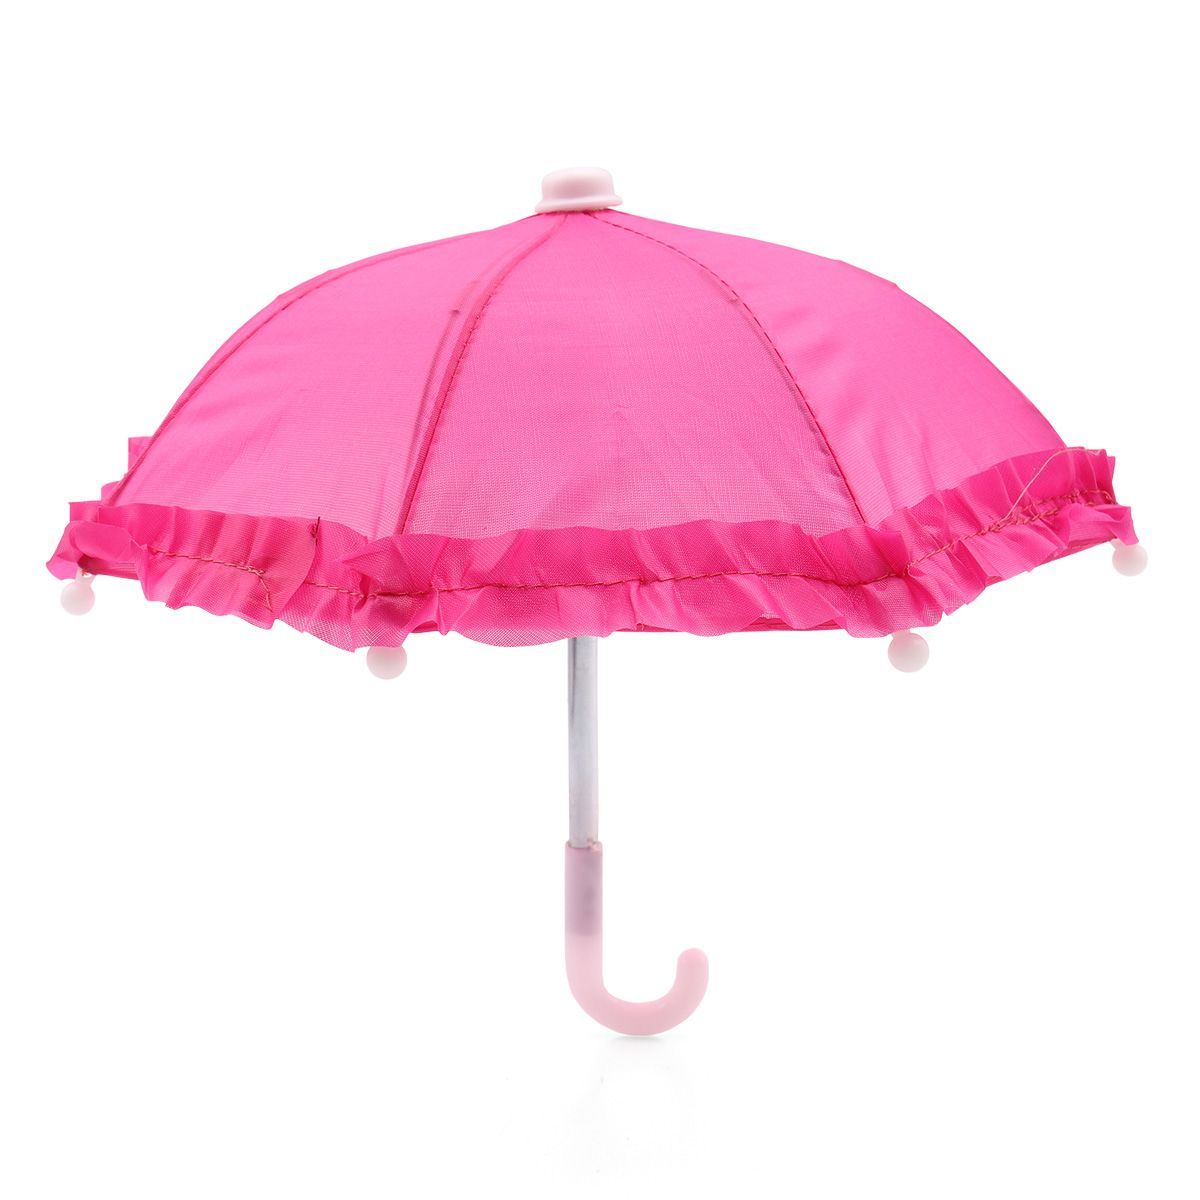 Зонтик для кукол. Молочный зонтик для куклы. Кукла Astra&Craft. Теорема зонтика. Зонтик для куклы